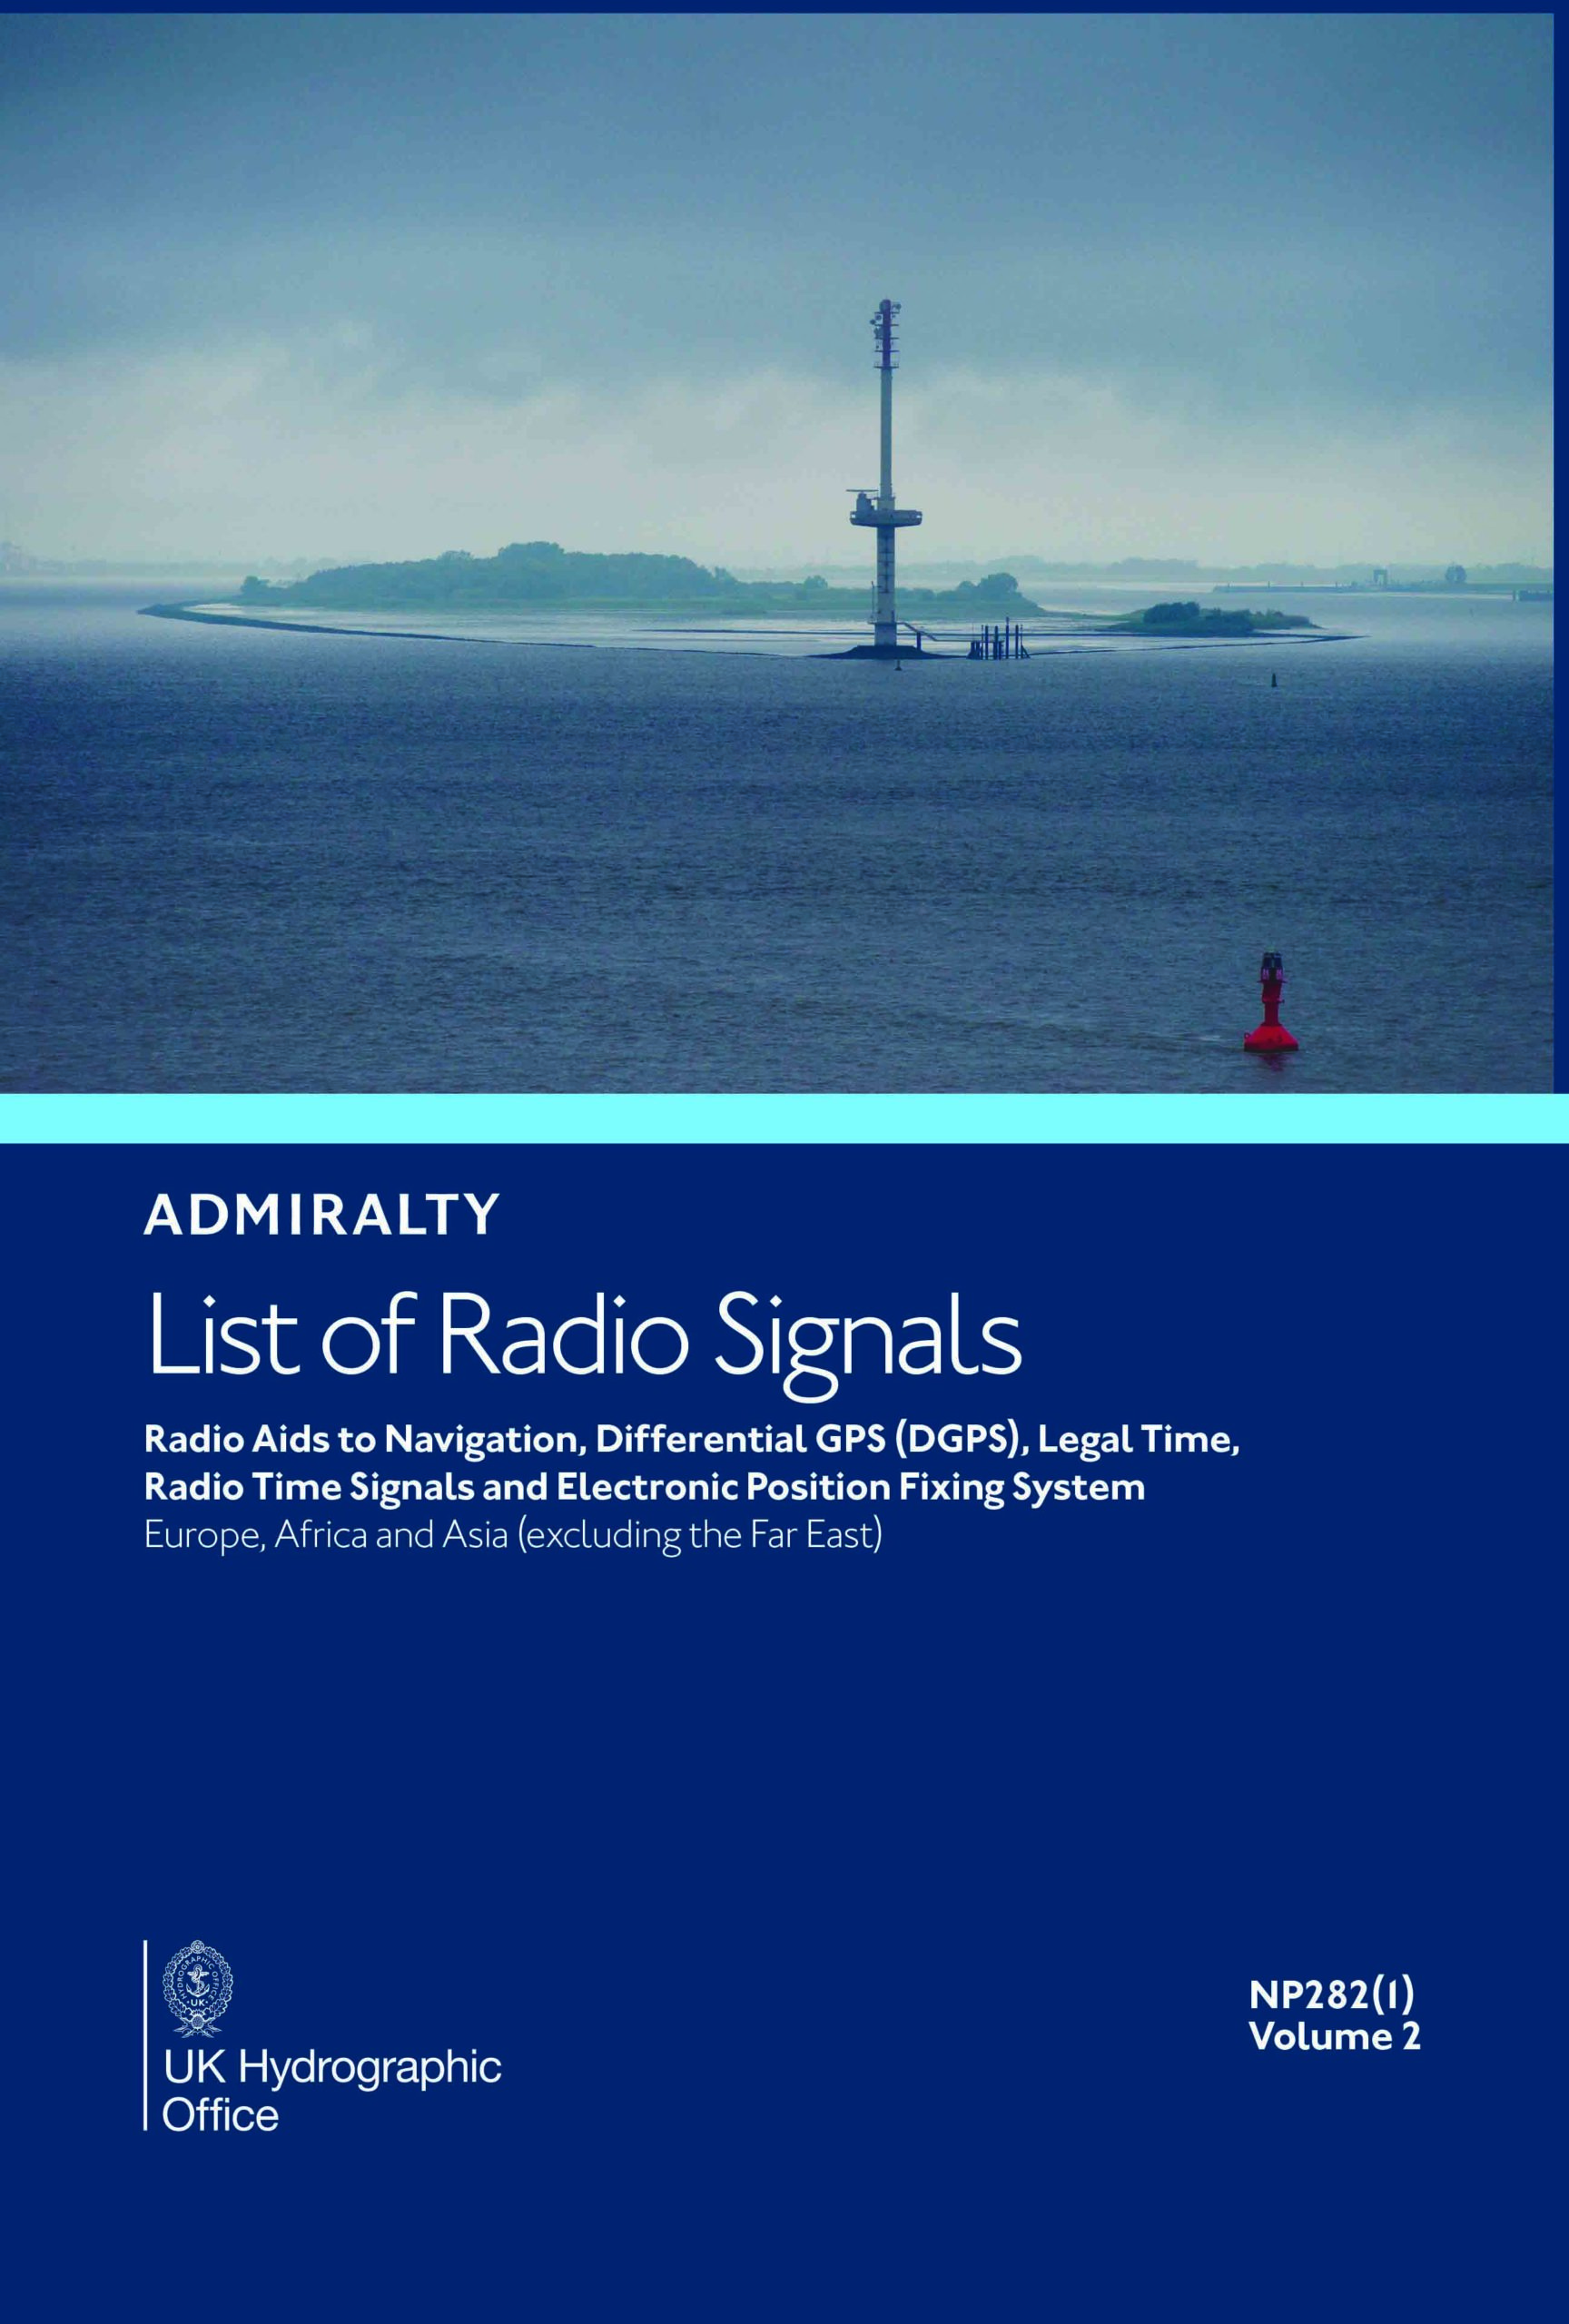 NP282(1) List of Radio Signals Vol. 2 Part 1